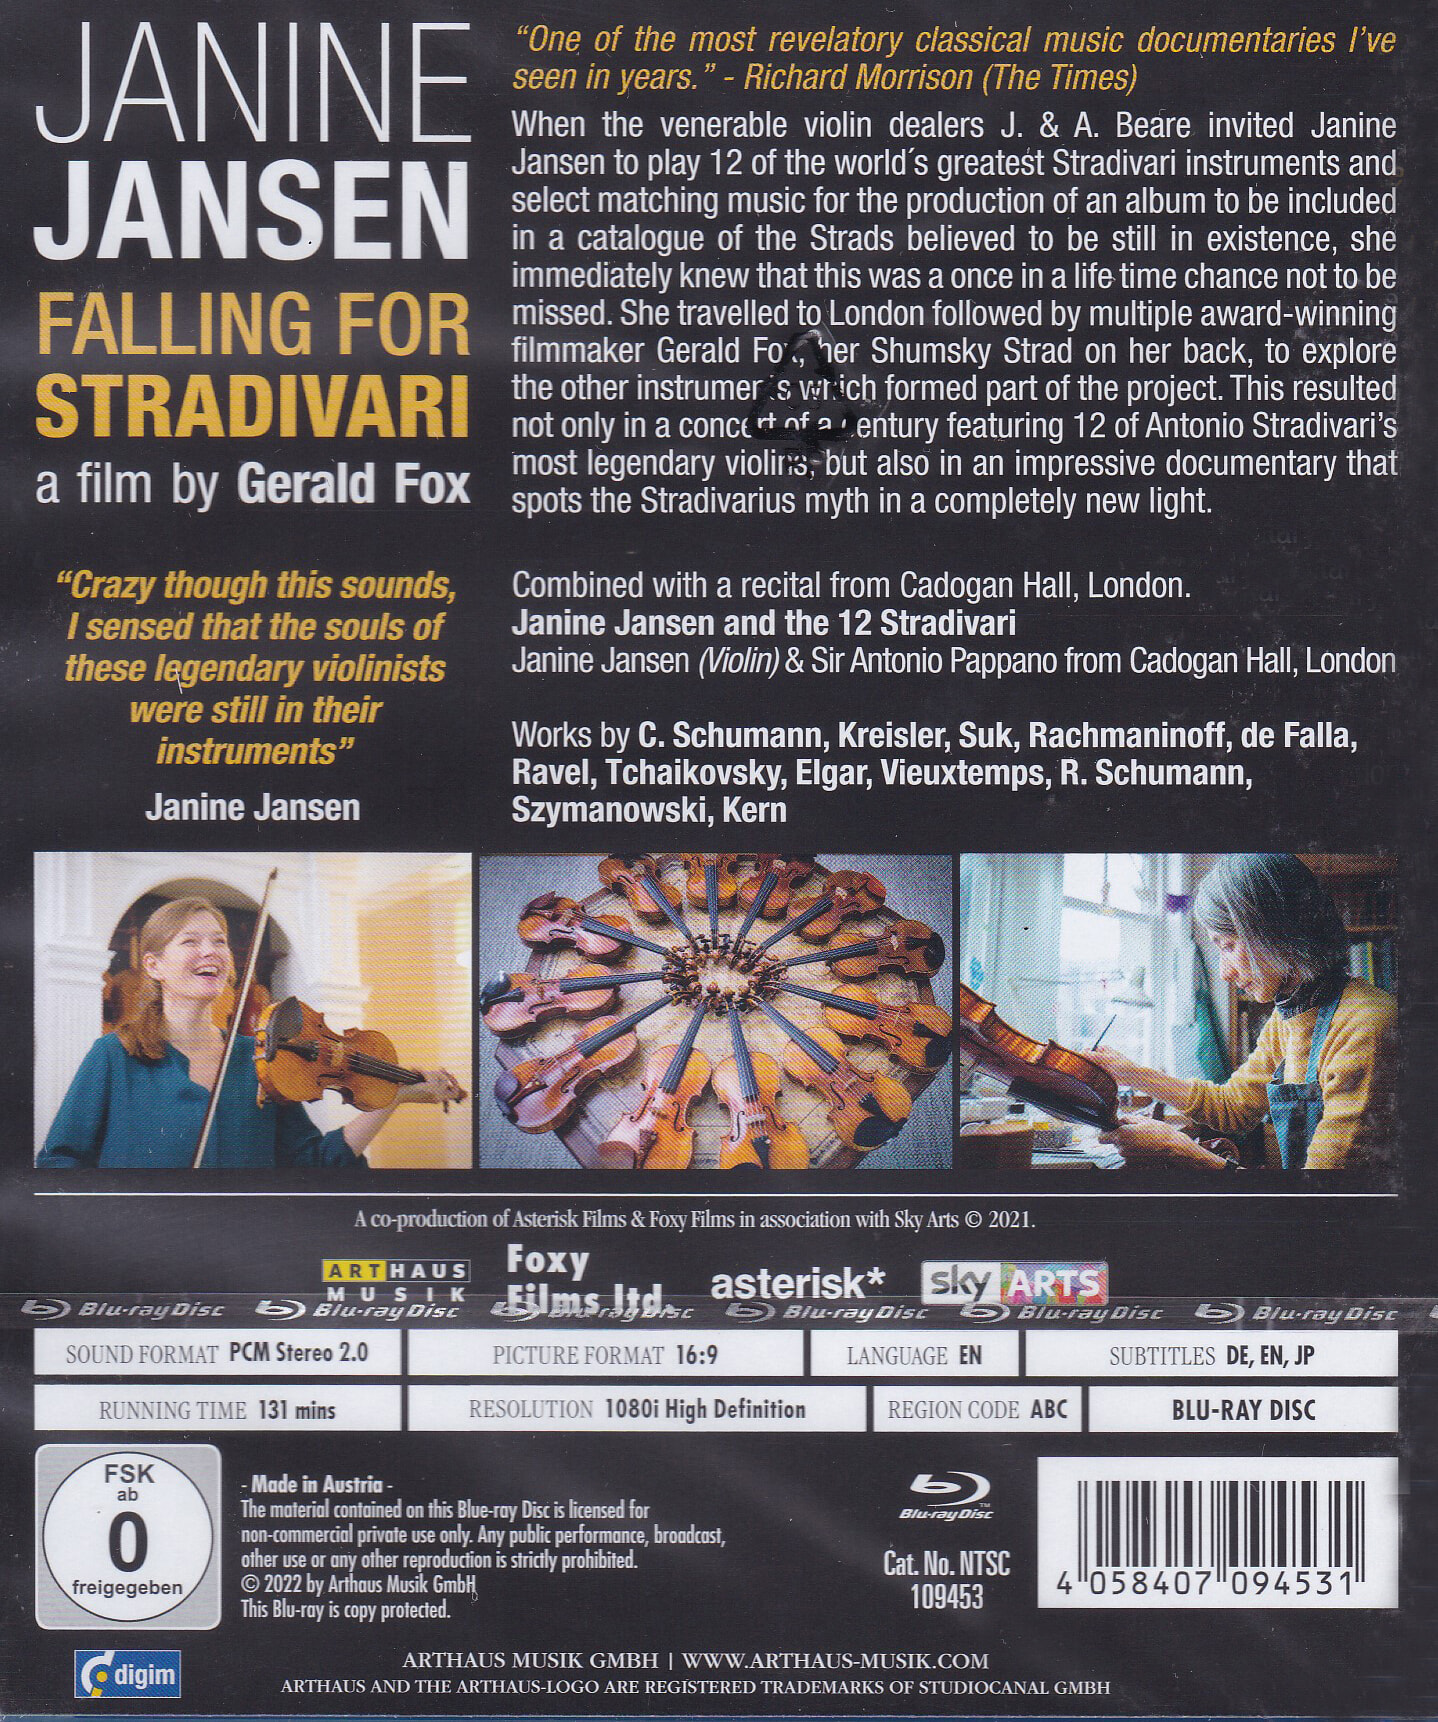 야니네 얀센 스트라디바리우스에 홀리다 (Janine Jansen Falling For Stradivari) 